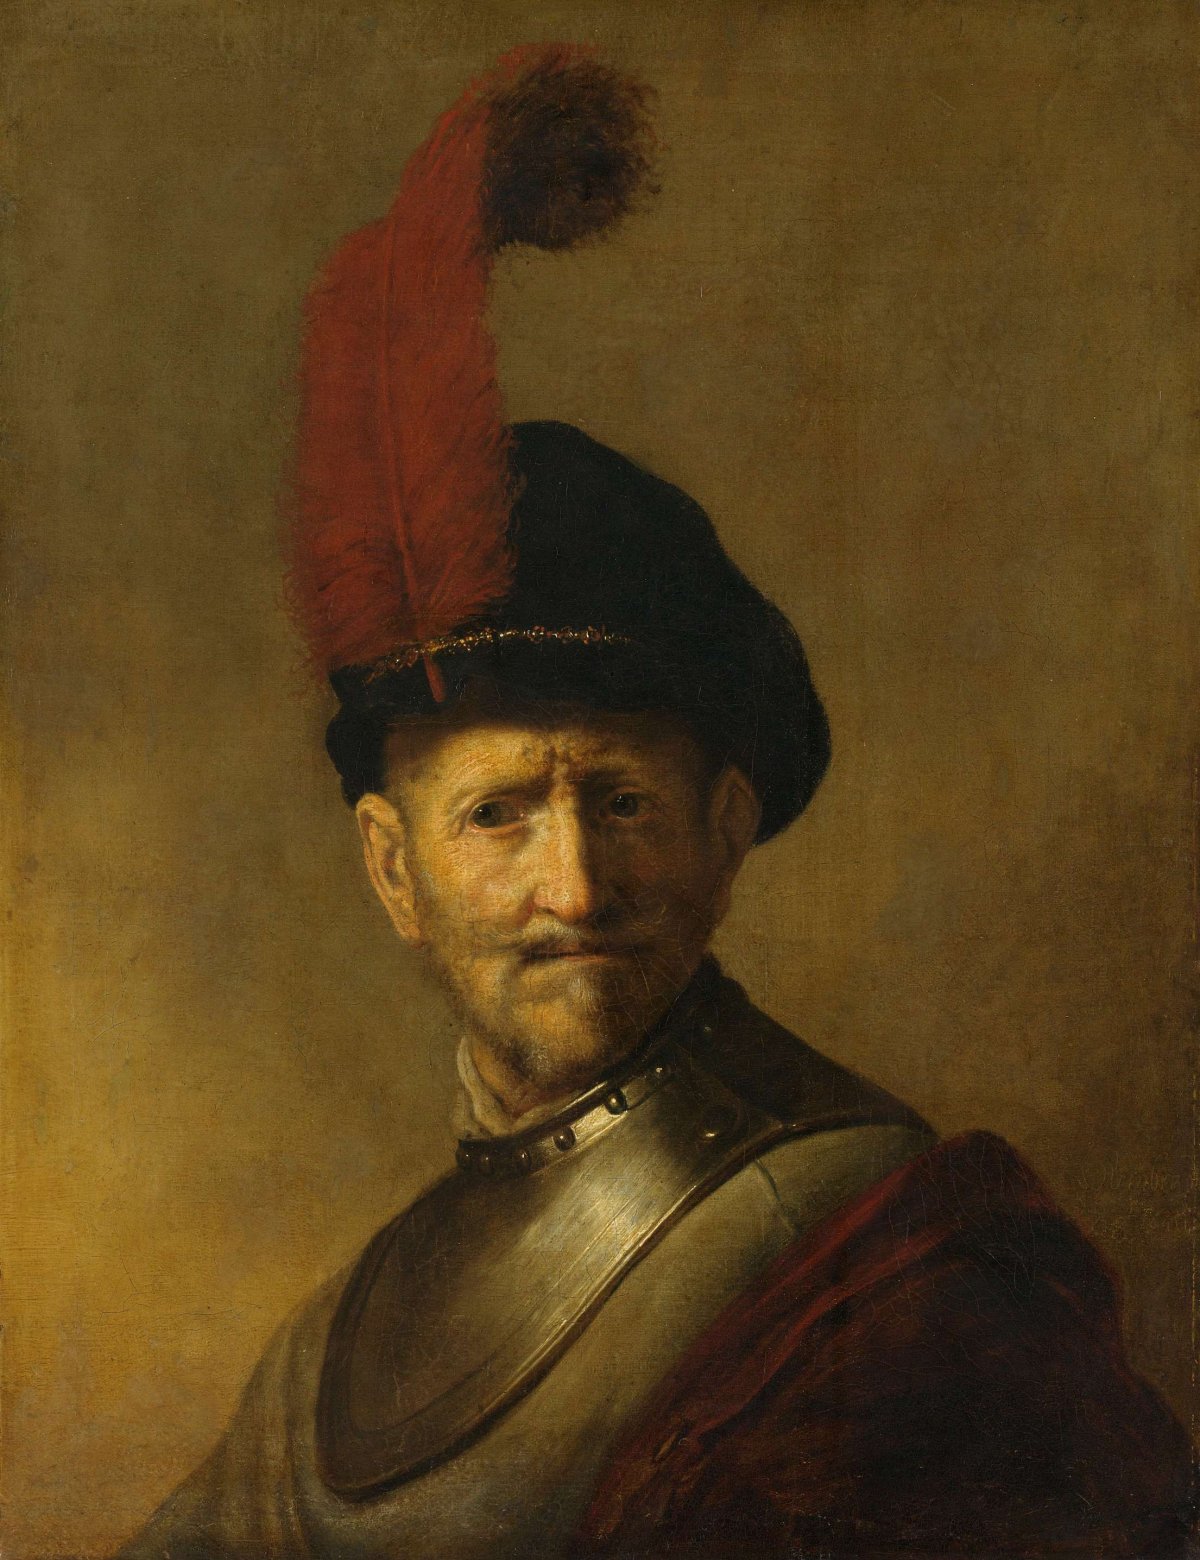 Portrait of a Man, perhaps Rembrandt's Father, Harmen Gerritsz van Rijn, Rembrandt van Rijn, after c. 1634